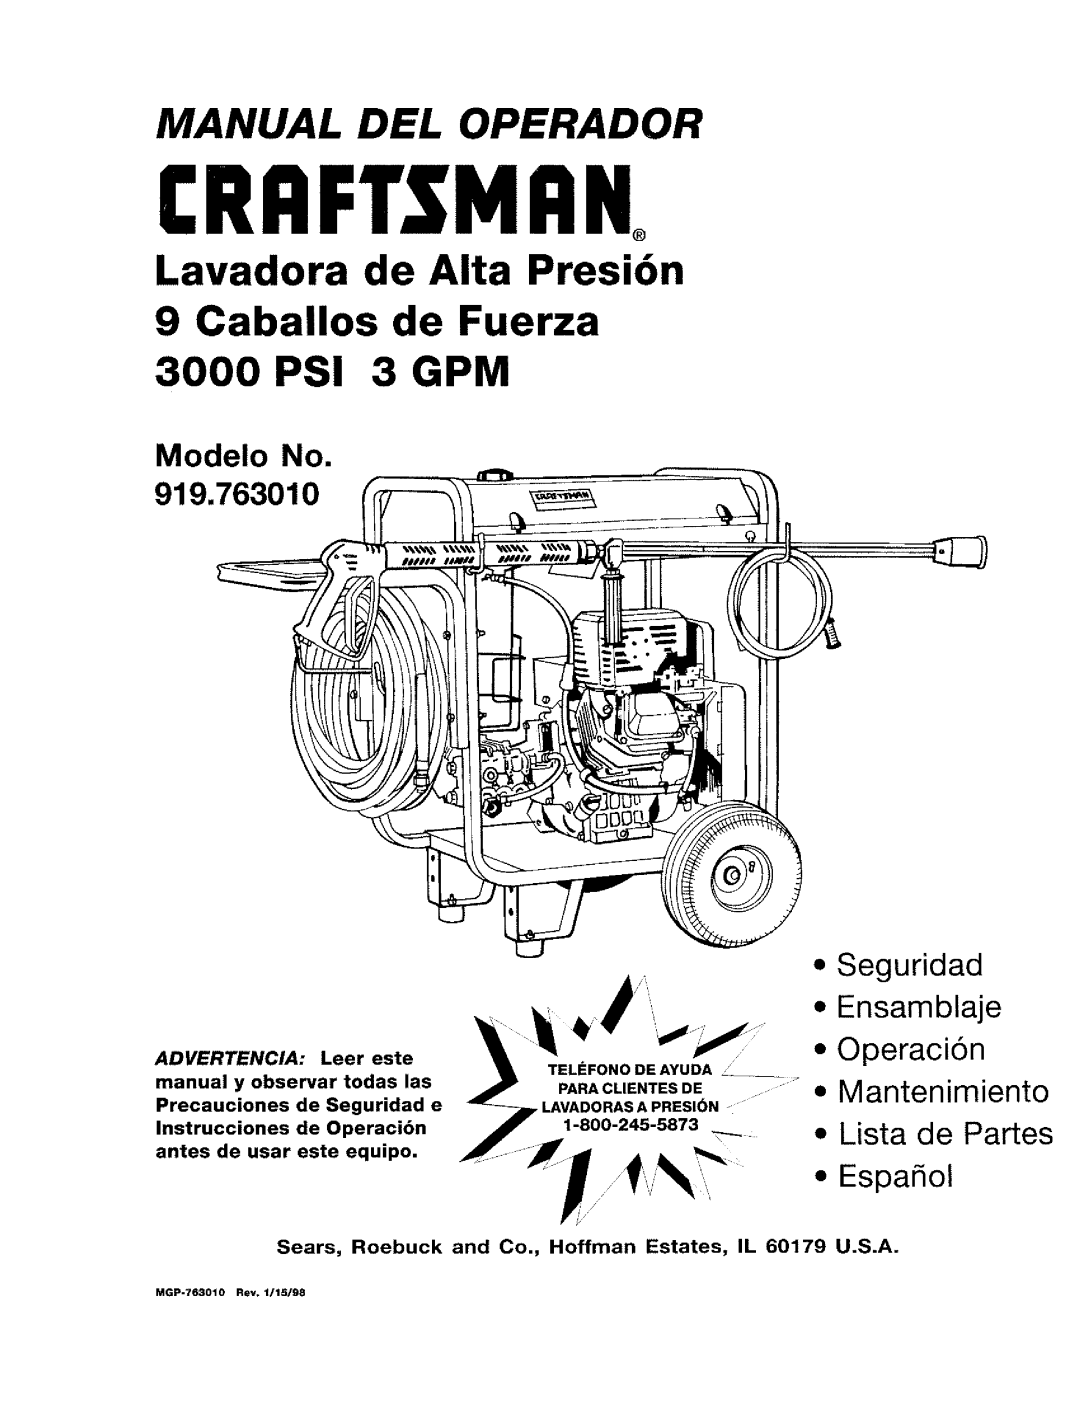 Craftsman MGP-762010 manual 